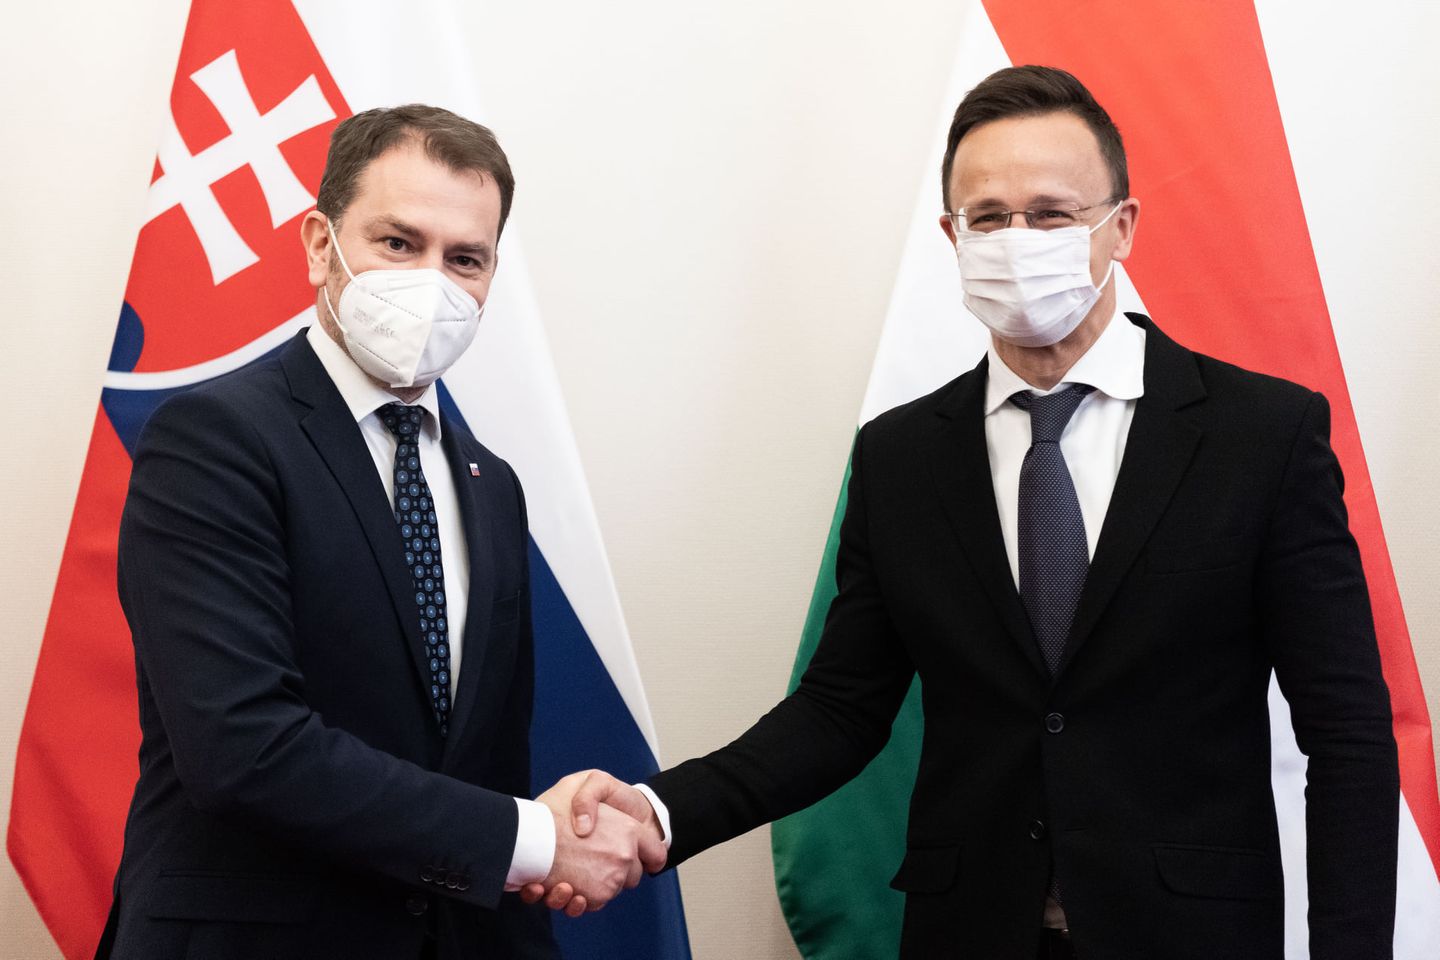 Szlovákia segítséget kért és kapott Magyarországtól